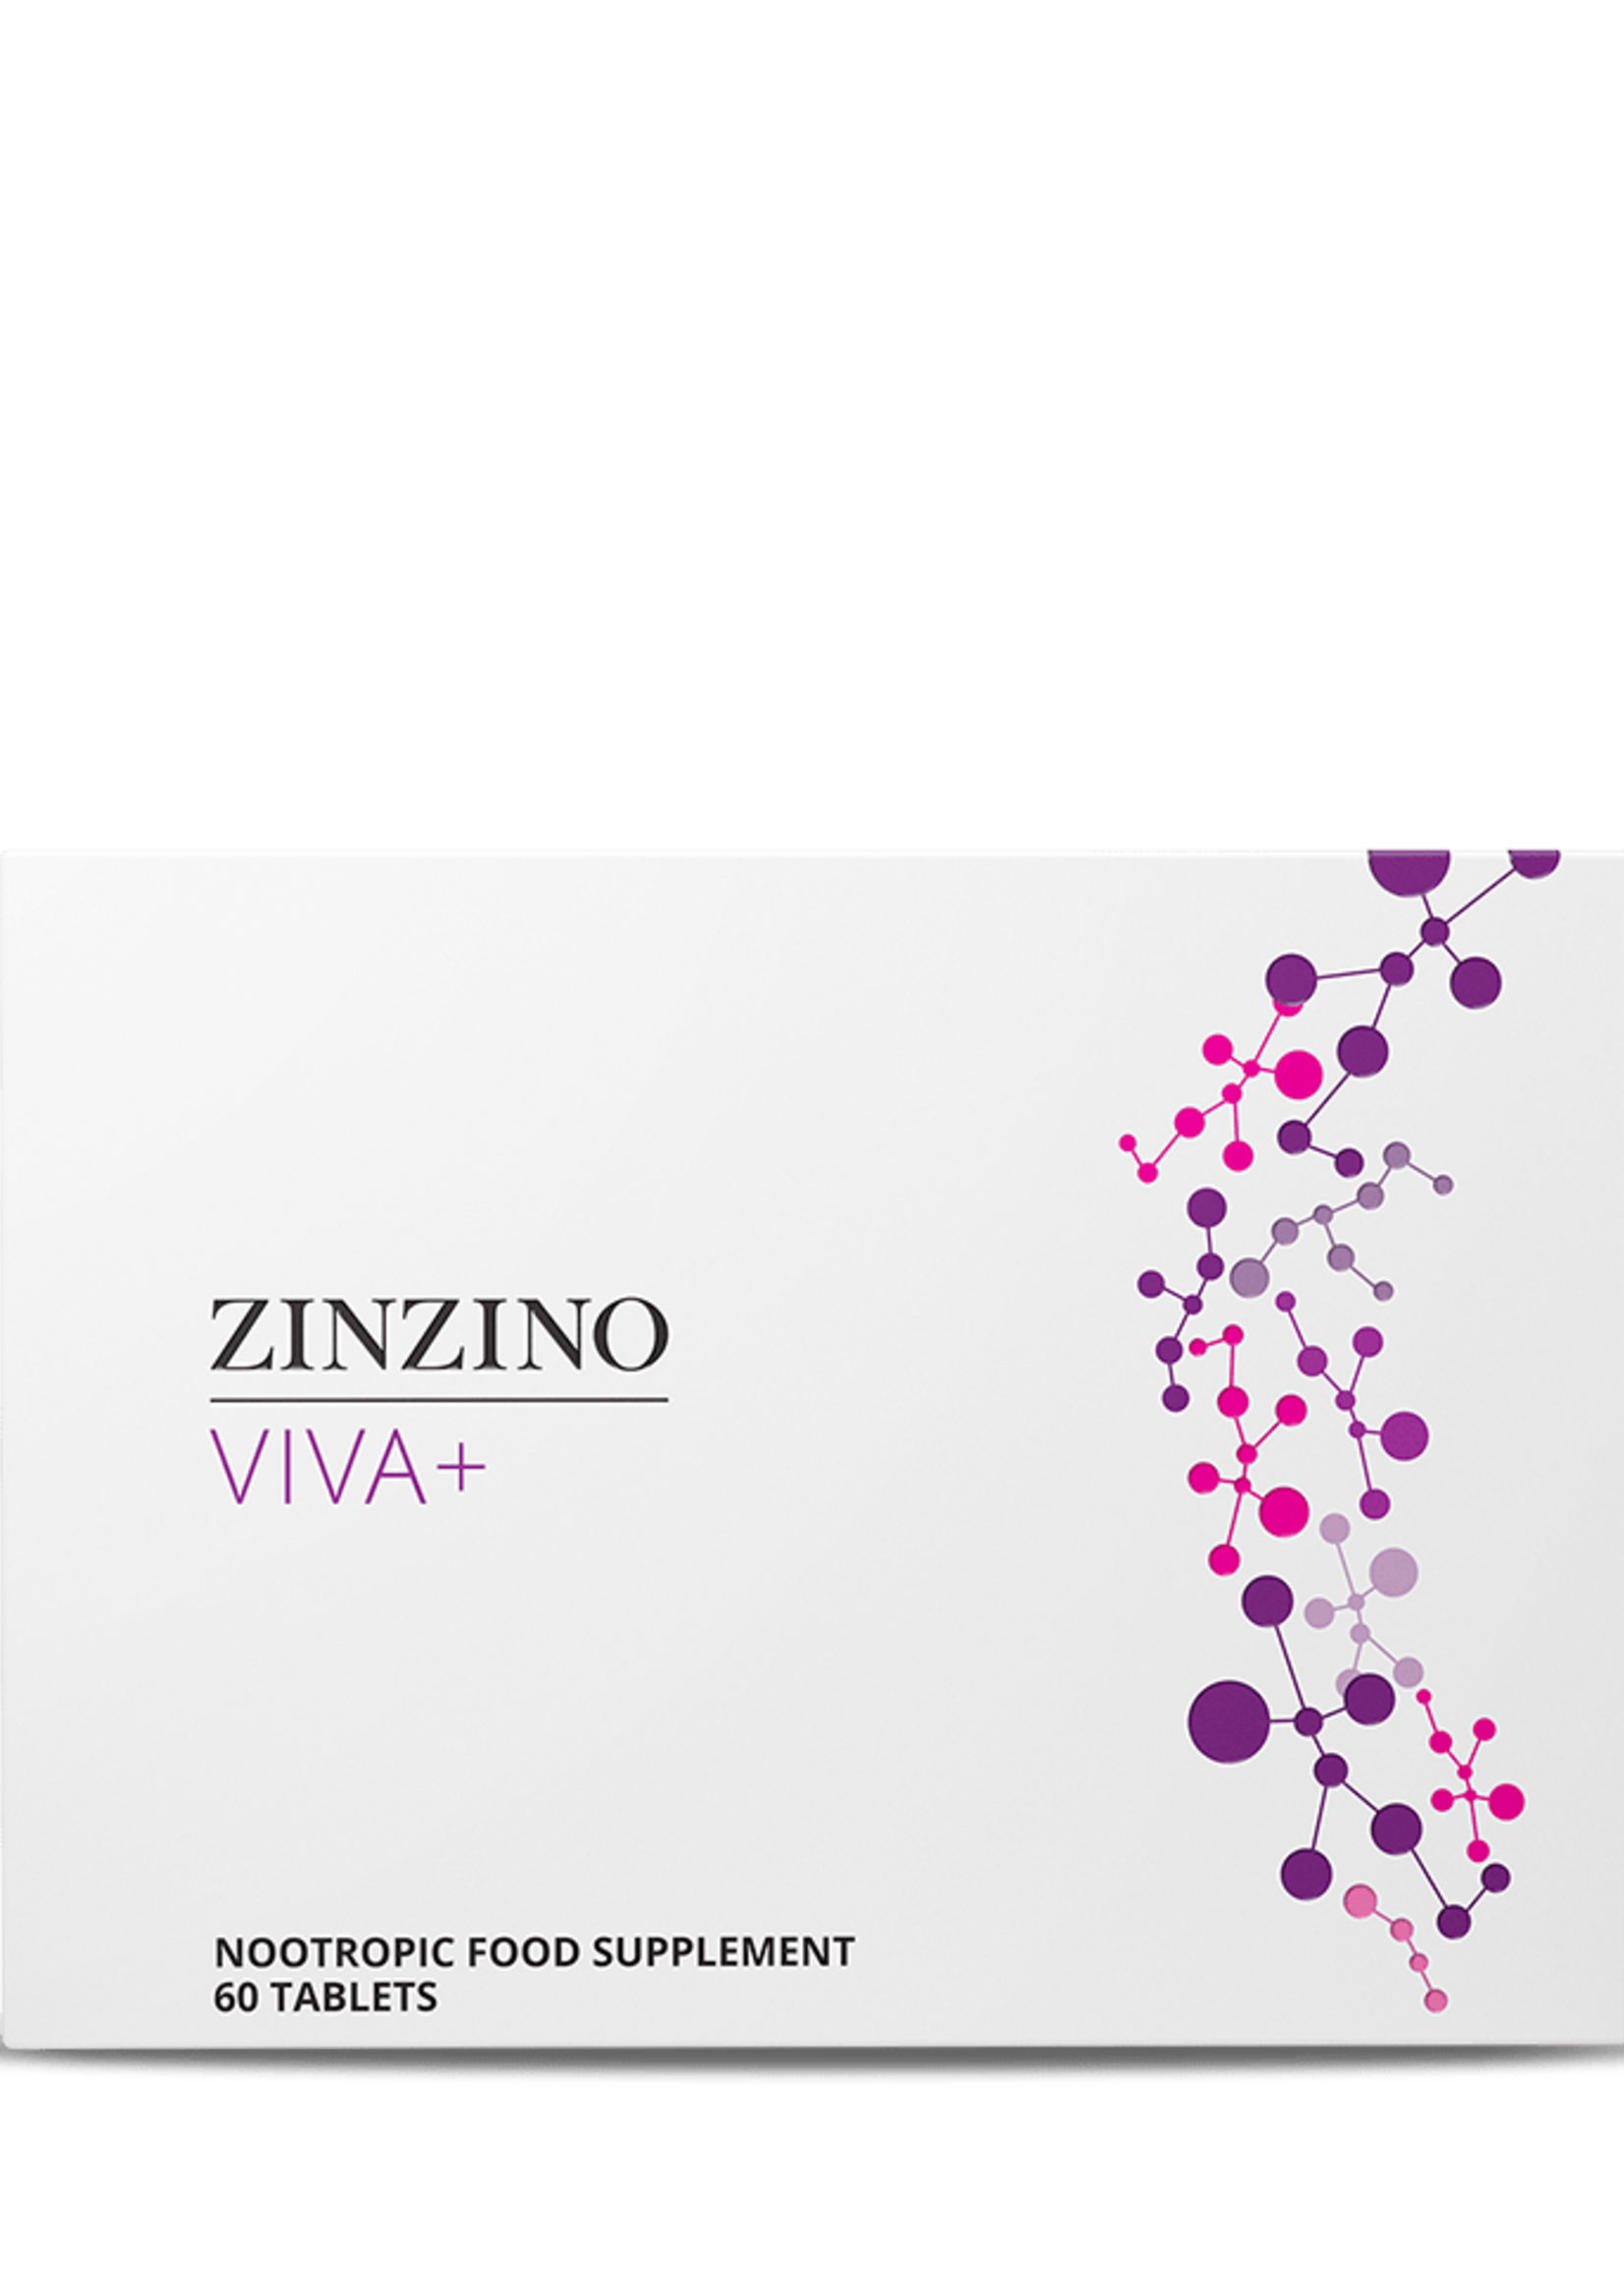 Zinzino Viva+